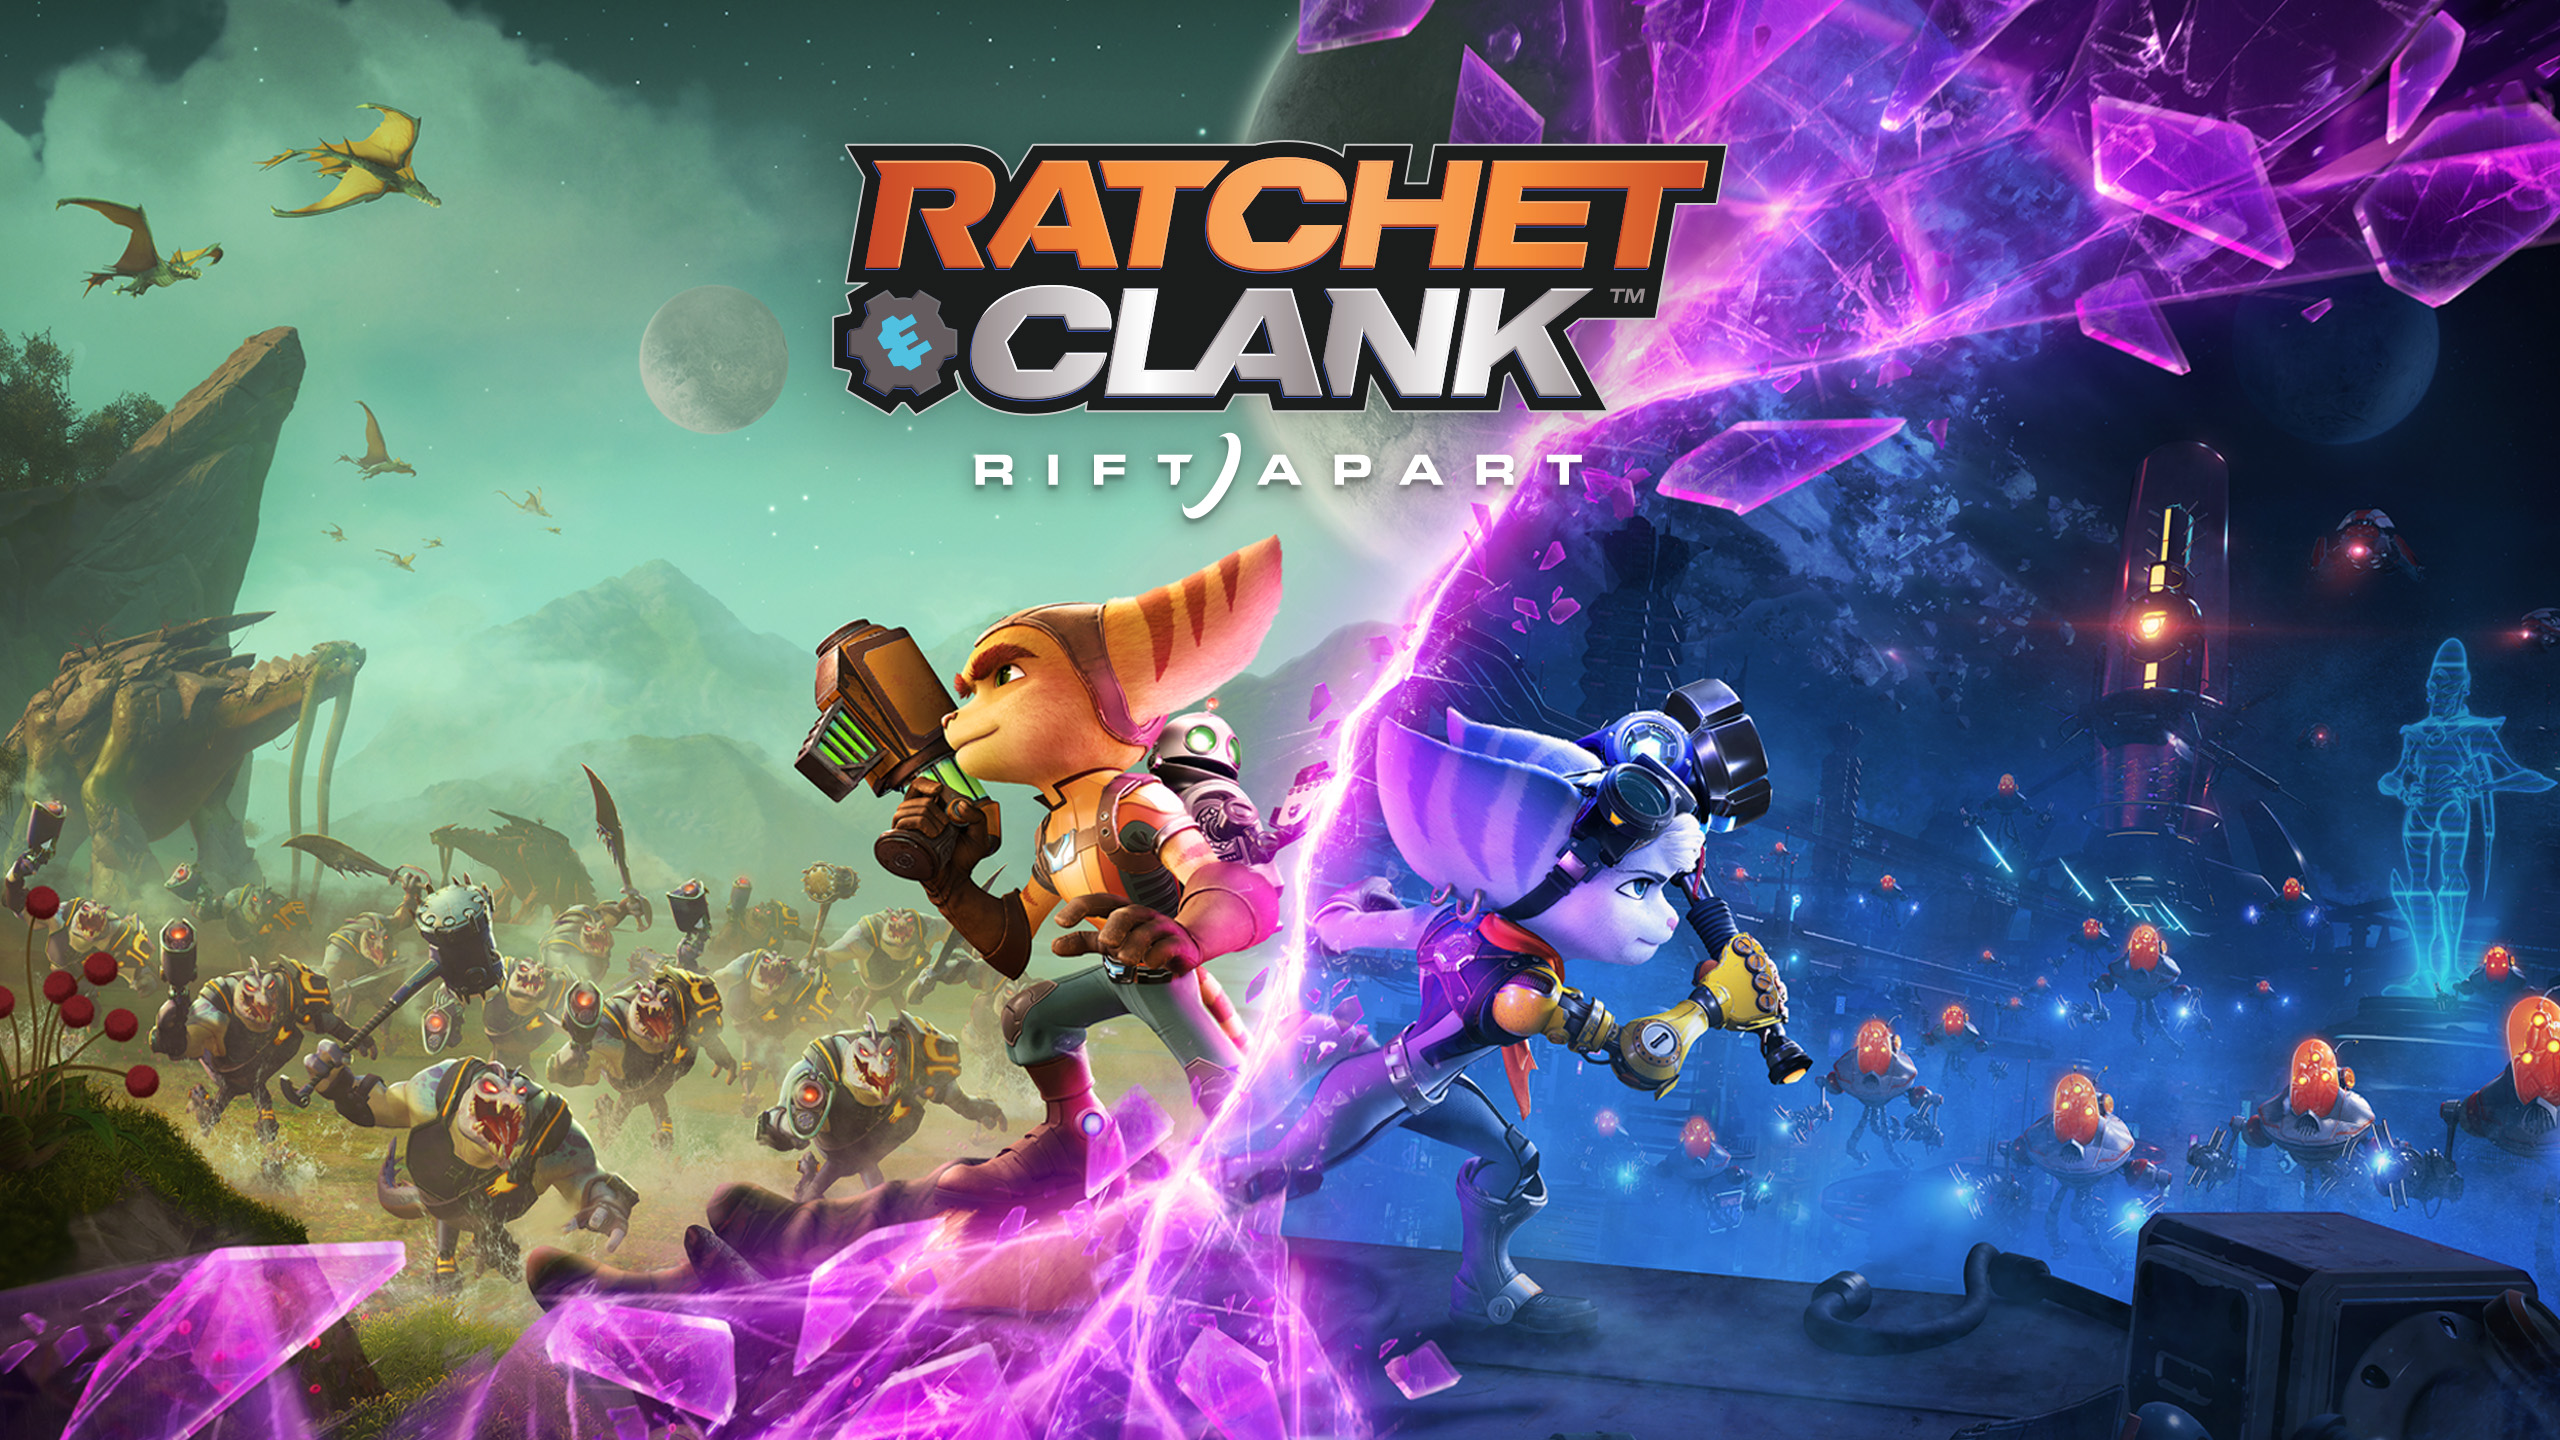 Ratchet & Clank: Rift Apart ИГРОМУЛЬФИЛЬМ ►#6 Прохождение без комментариев (Русская озвучка)